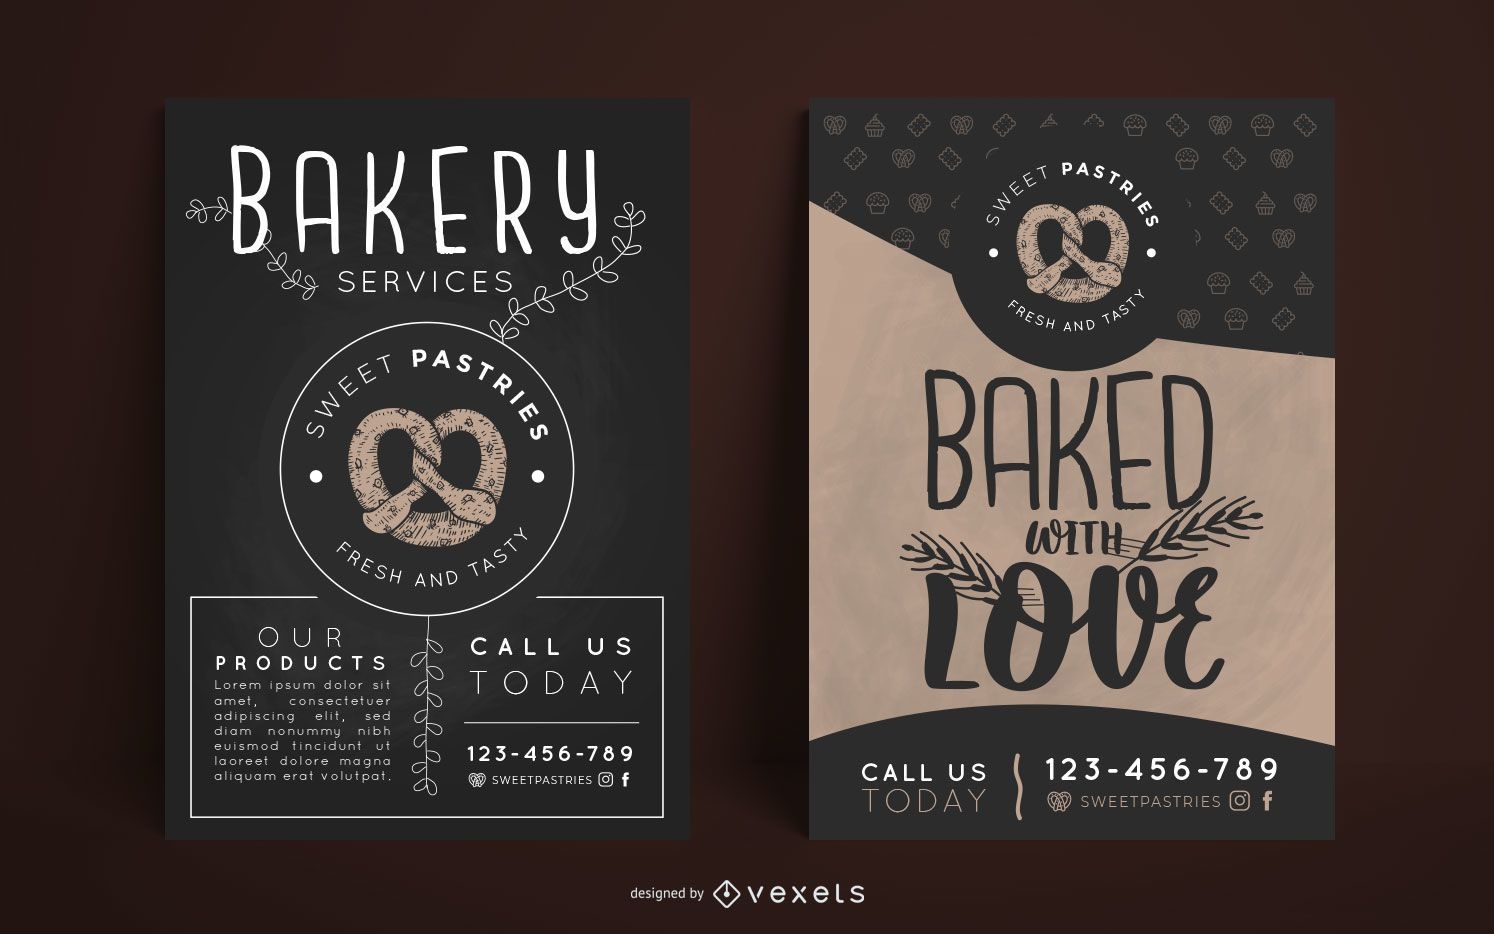 Bakery poster design